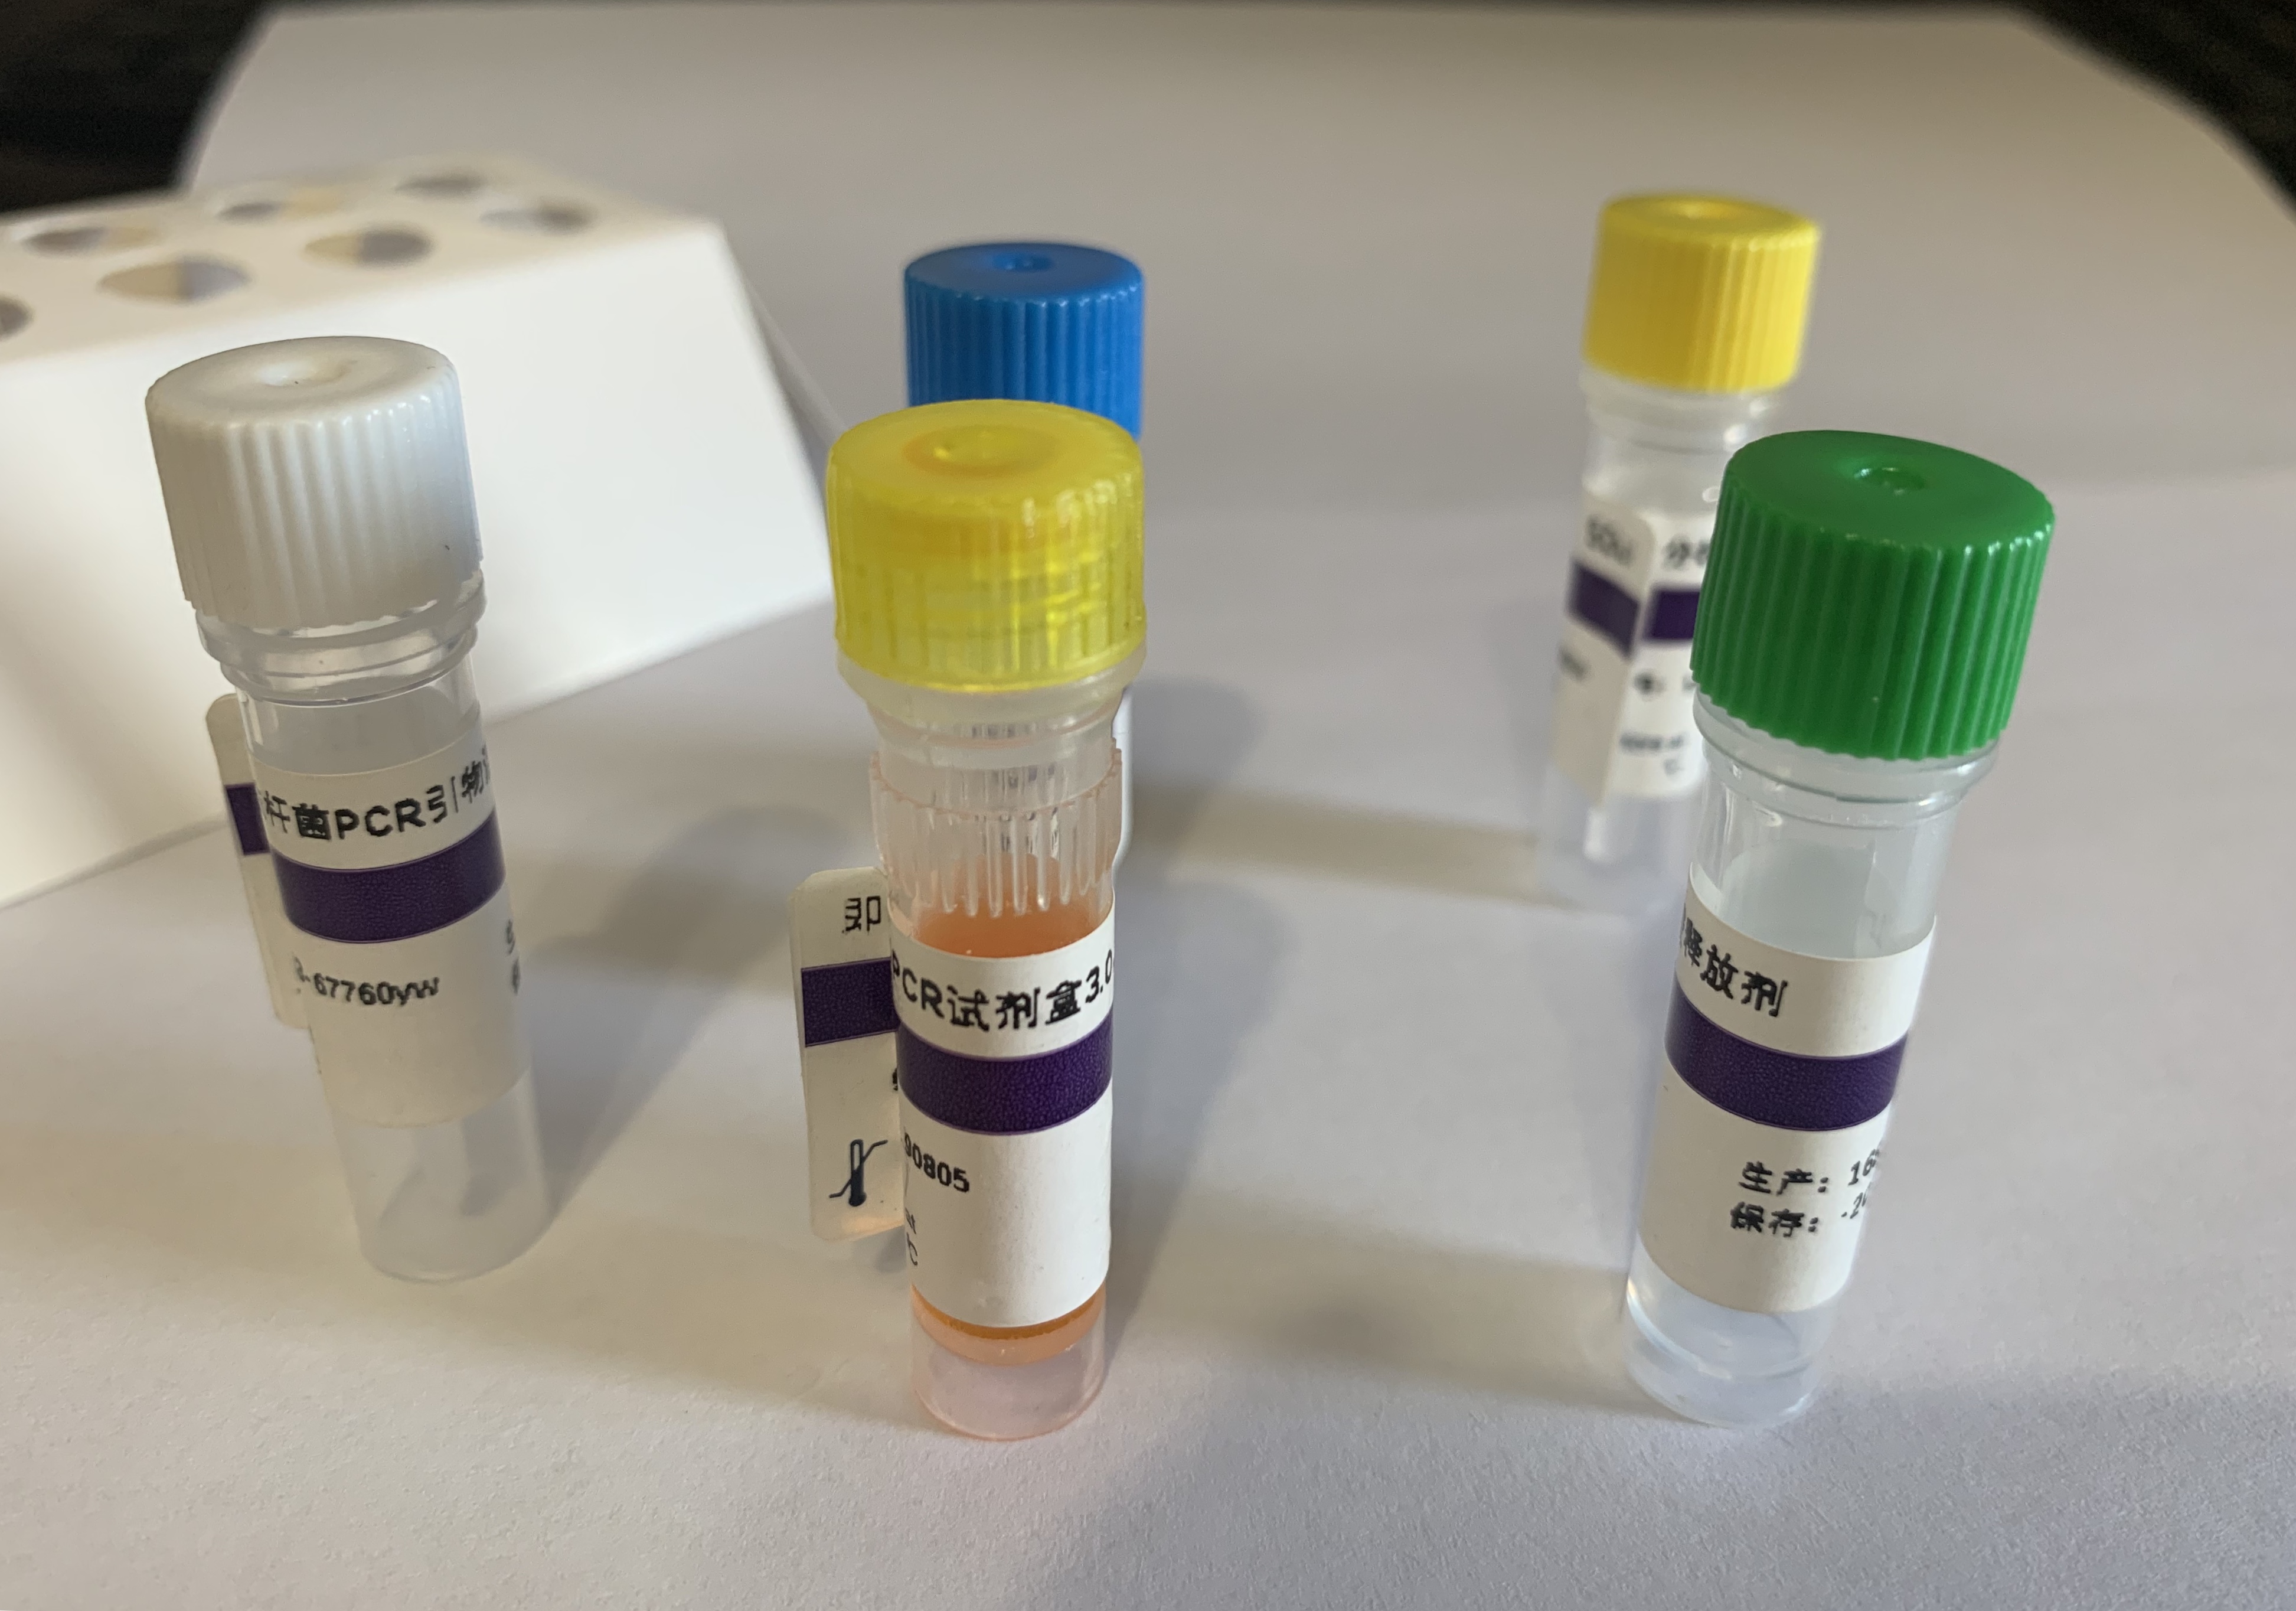 小泰勒虫PCR检测试剂盒